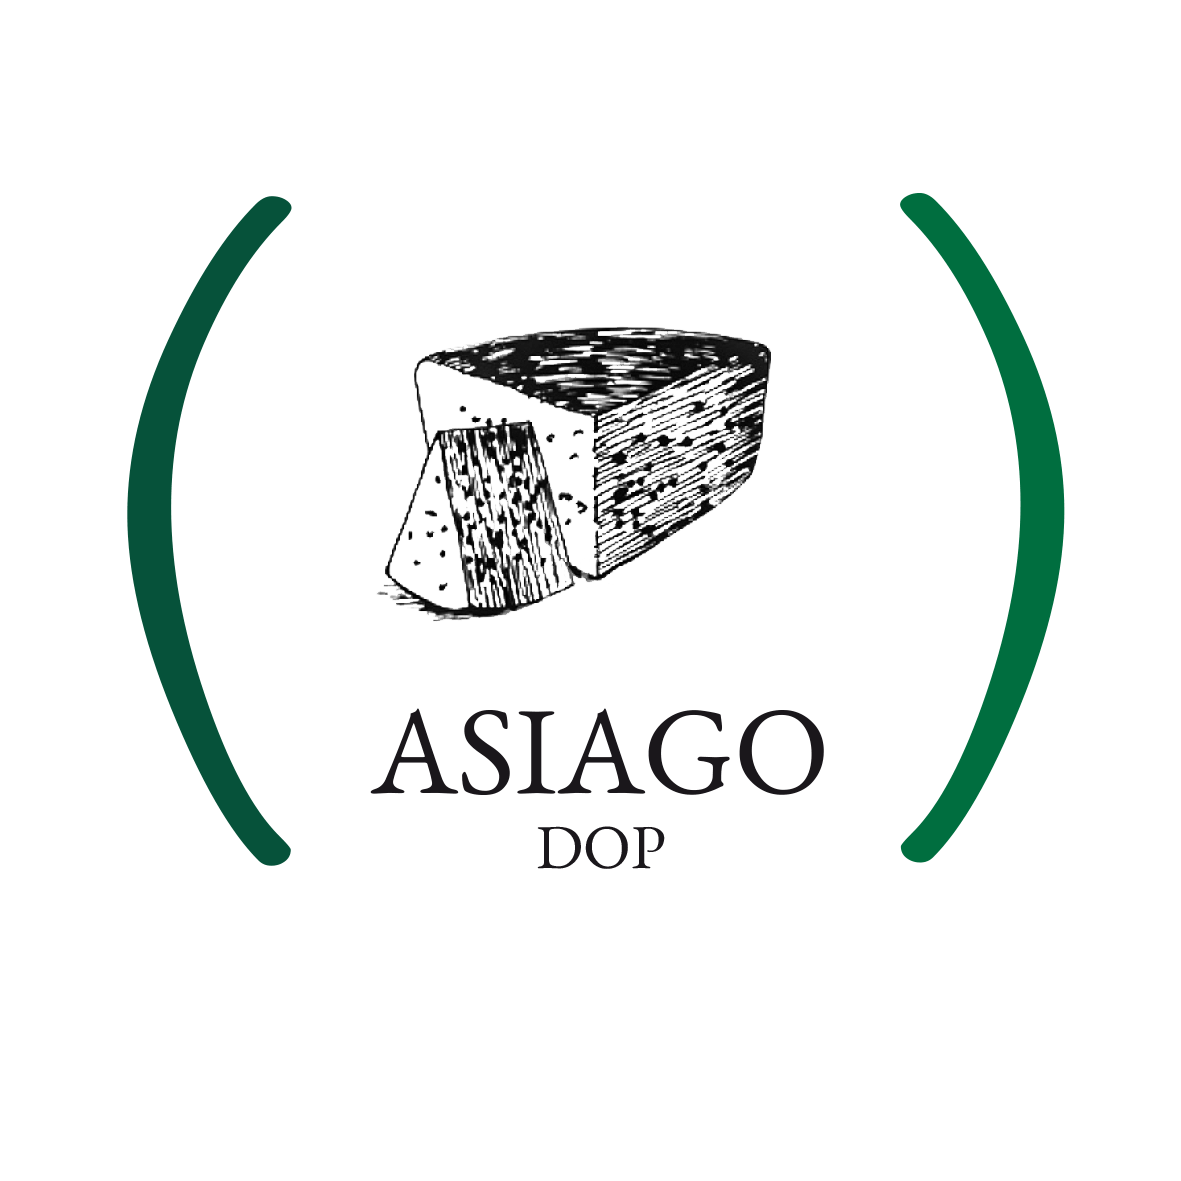 Asiago Logo - Casearia Monti Trentini - Asiago DOP